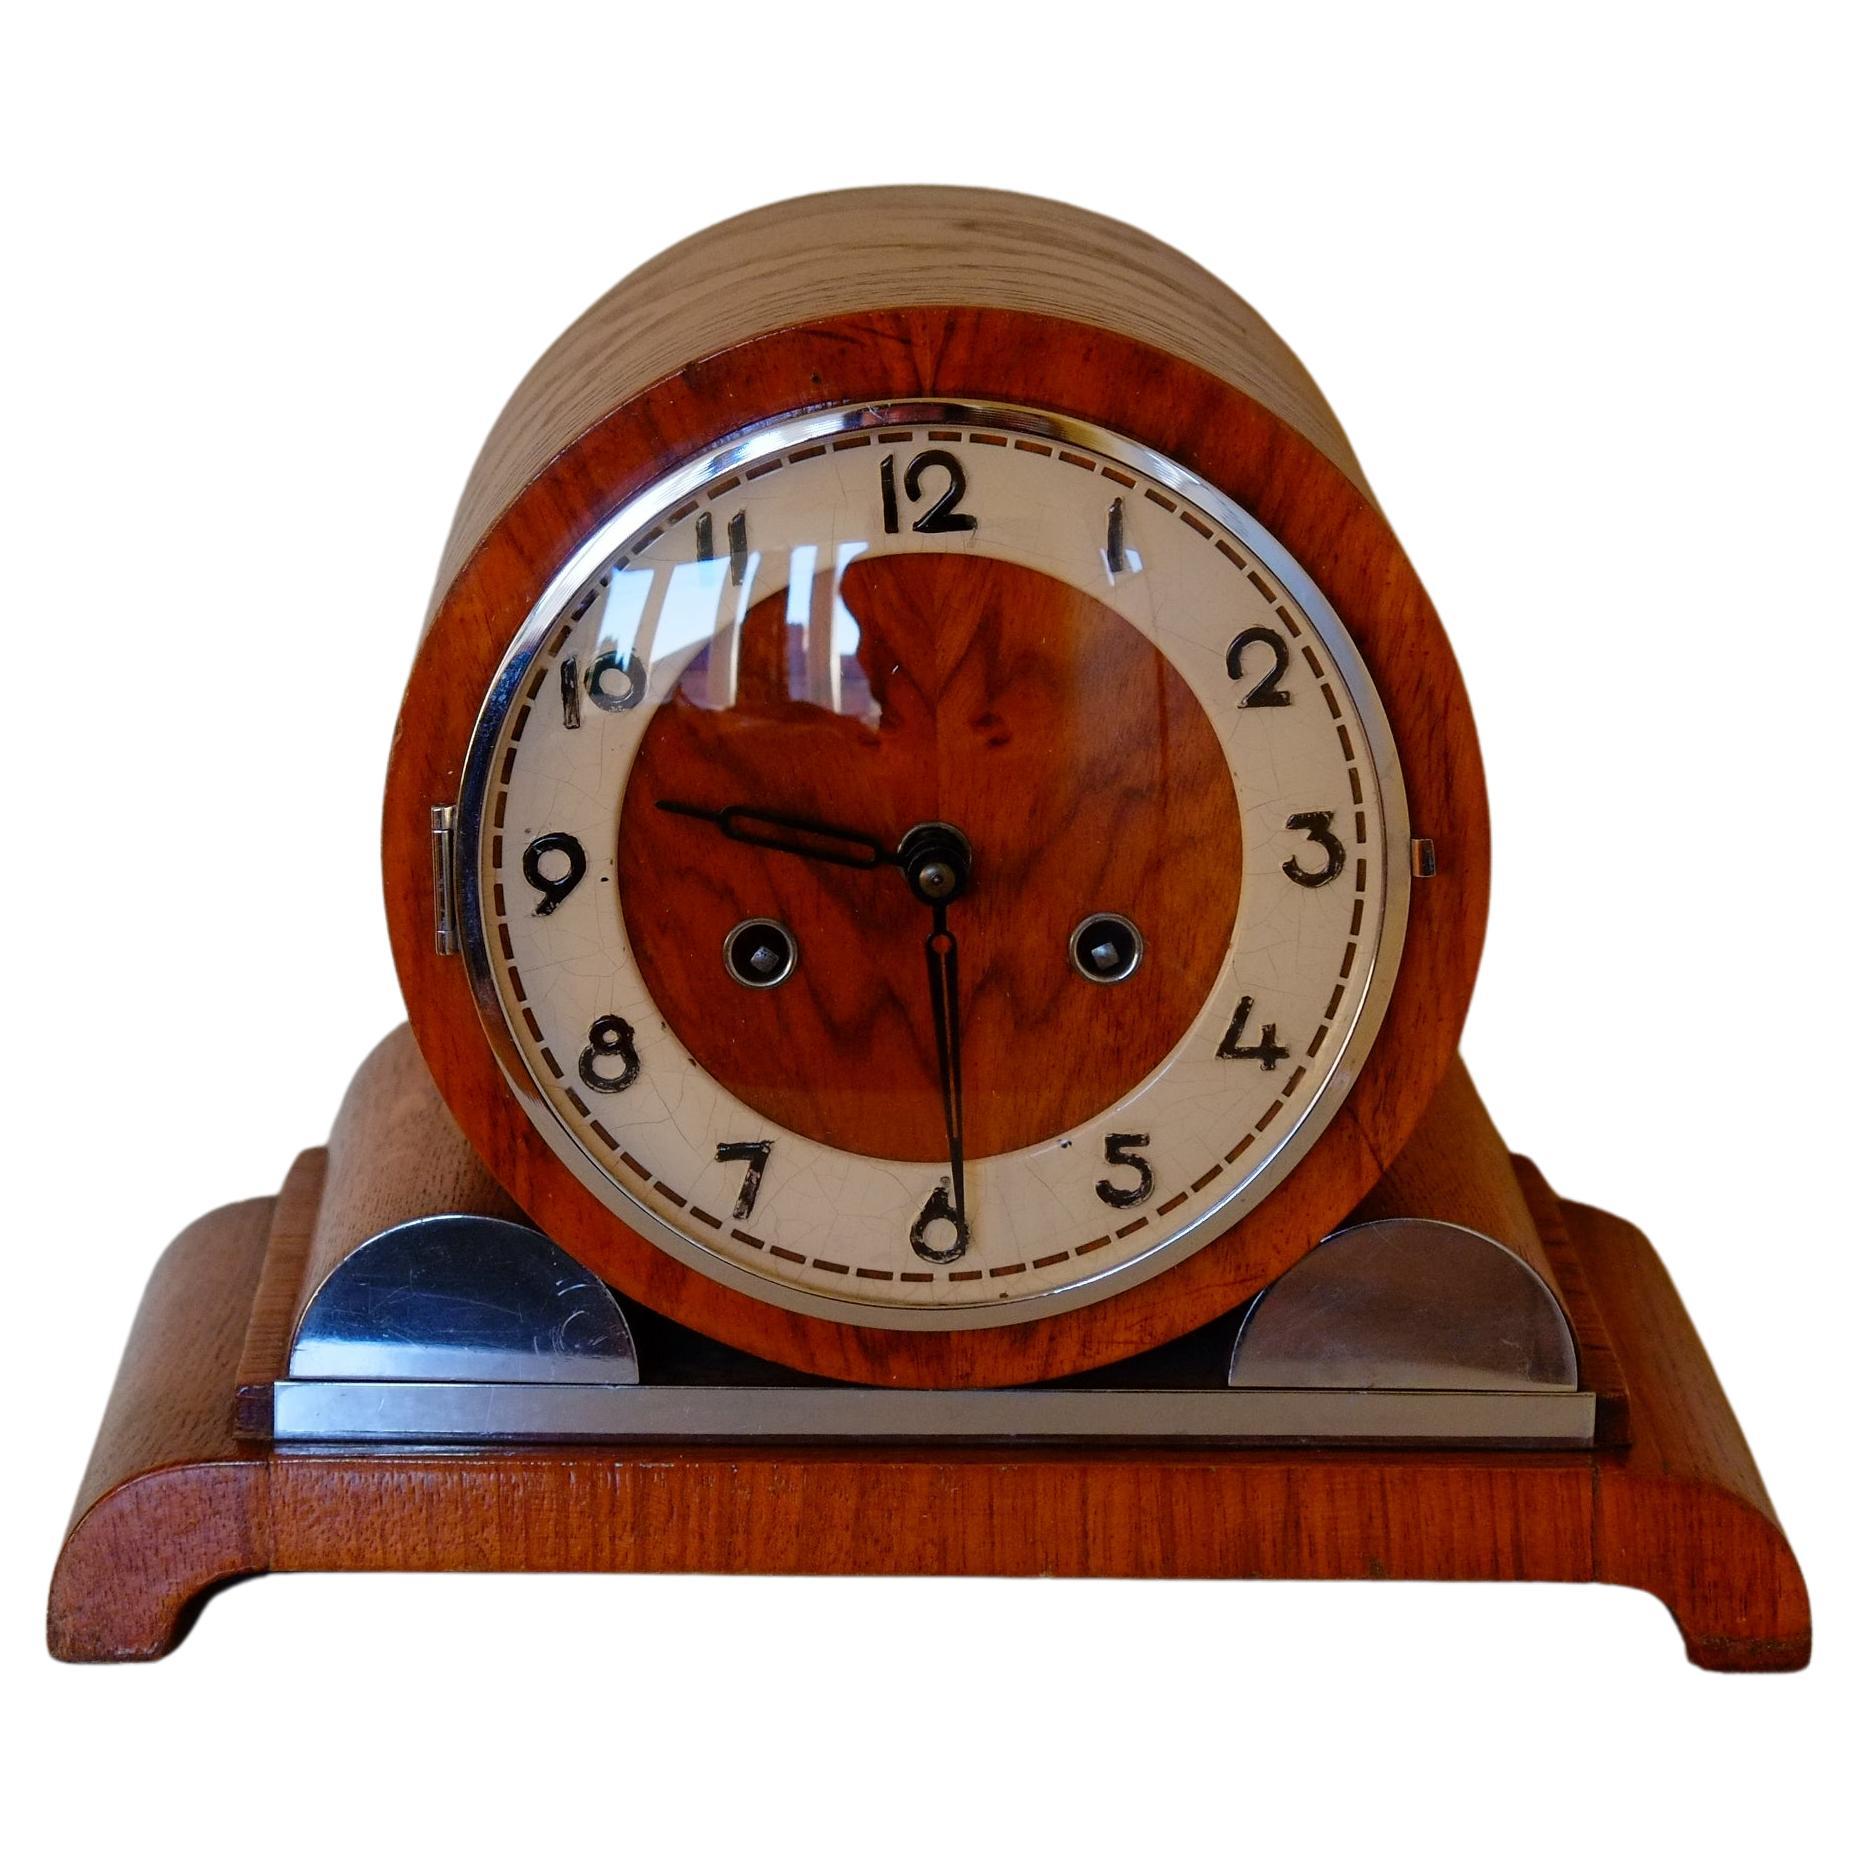 Atemberaubende große Bauhaus Mantel Uhr von Franz Hermle deutschen Uhrmacher. Diese Uhr hat eine atemberaubende große Fassform über kreisförmigen Füßen, hergestellt aus Eiche mit einem Ziffernblatt aus Nussbaum. Die Zahlen sind eine atemberaubende